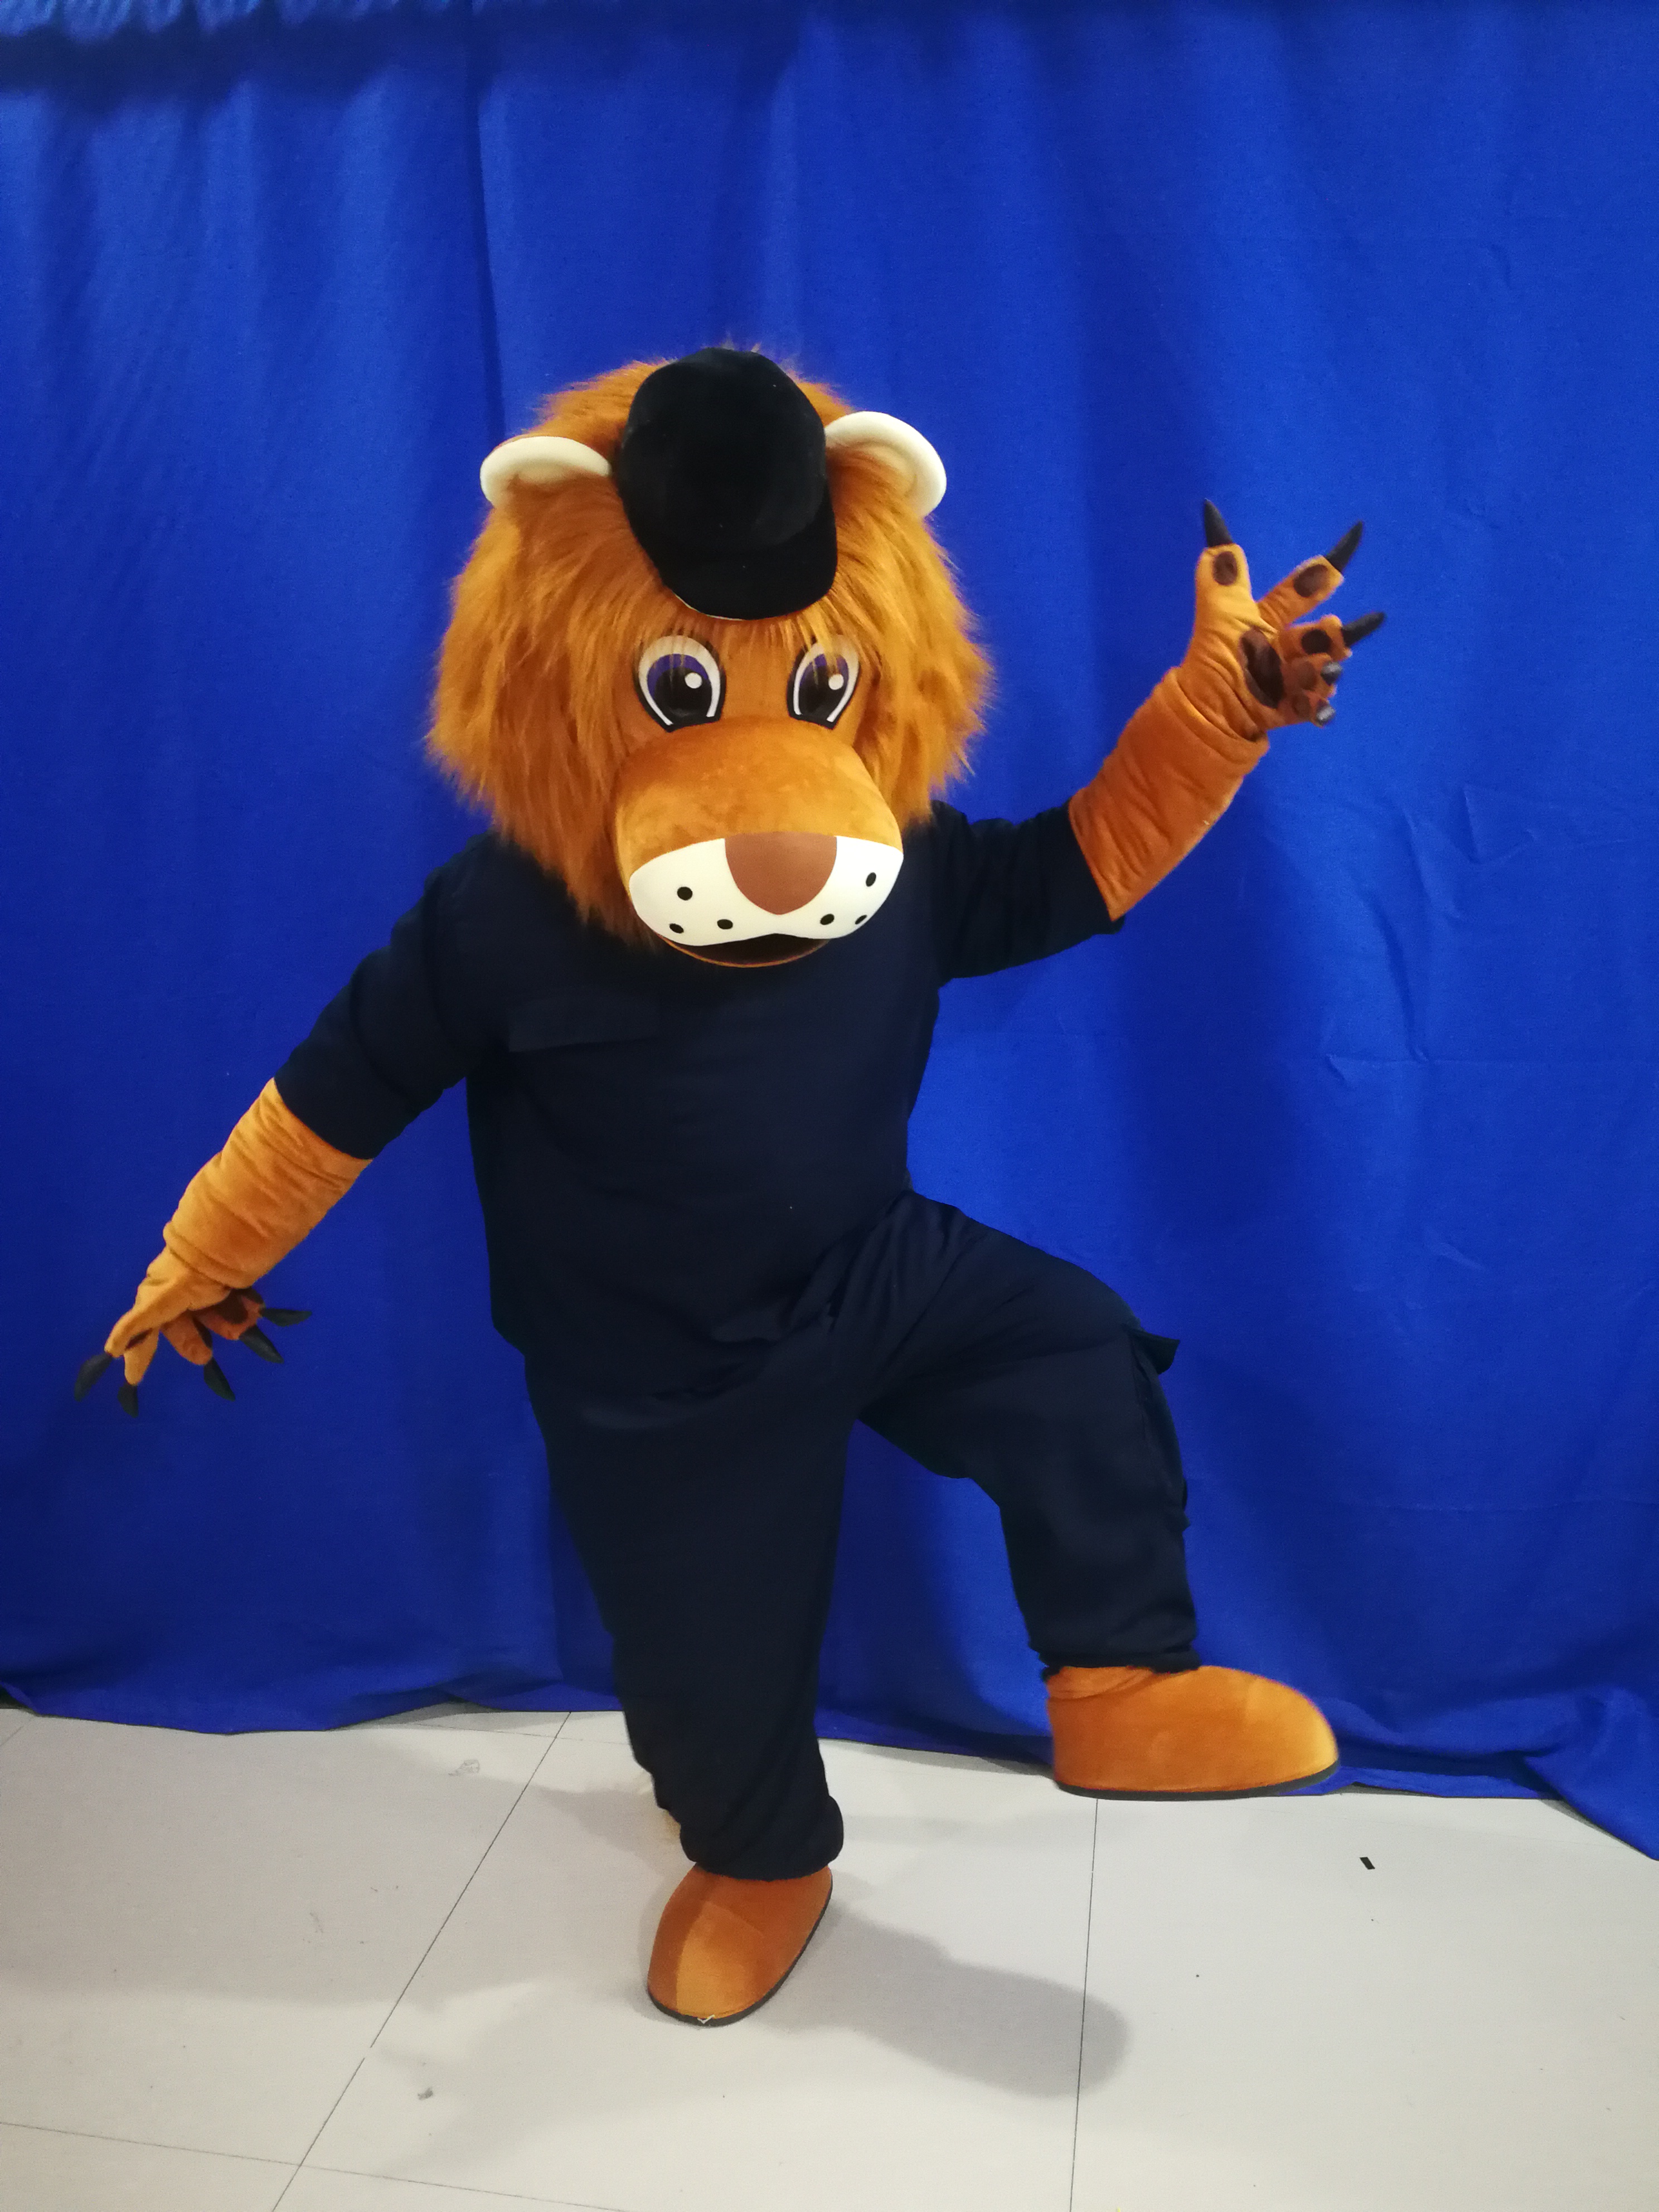 Fotos reales usan camisetas pantalones cortos león mascota traje fiesta de dibujos animados trajes de personaje de dibujos animados para la venta Tamaño para adultos Material de soporte directo de fábrica